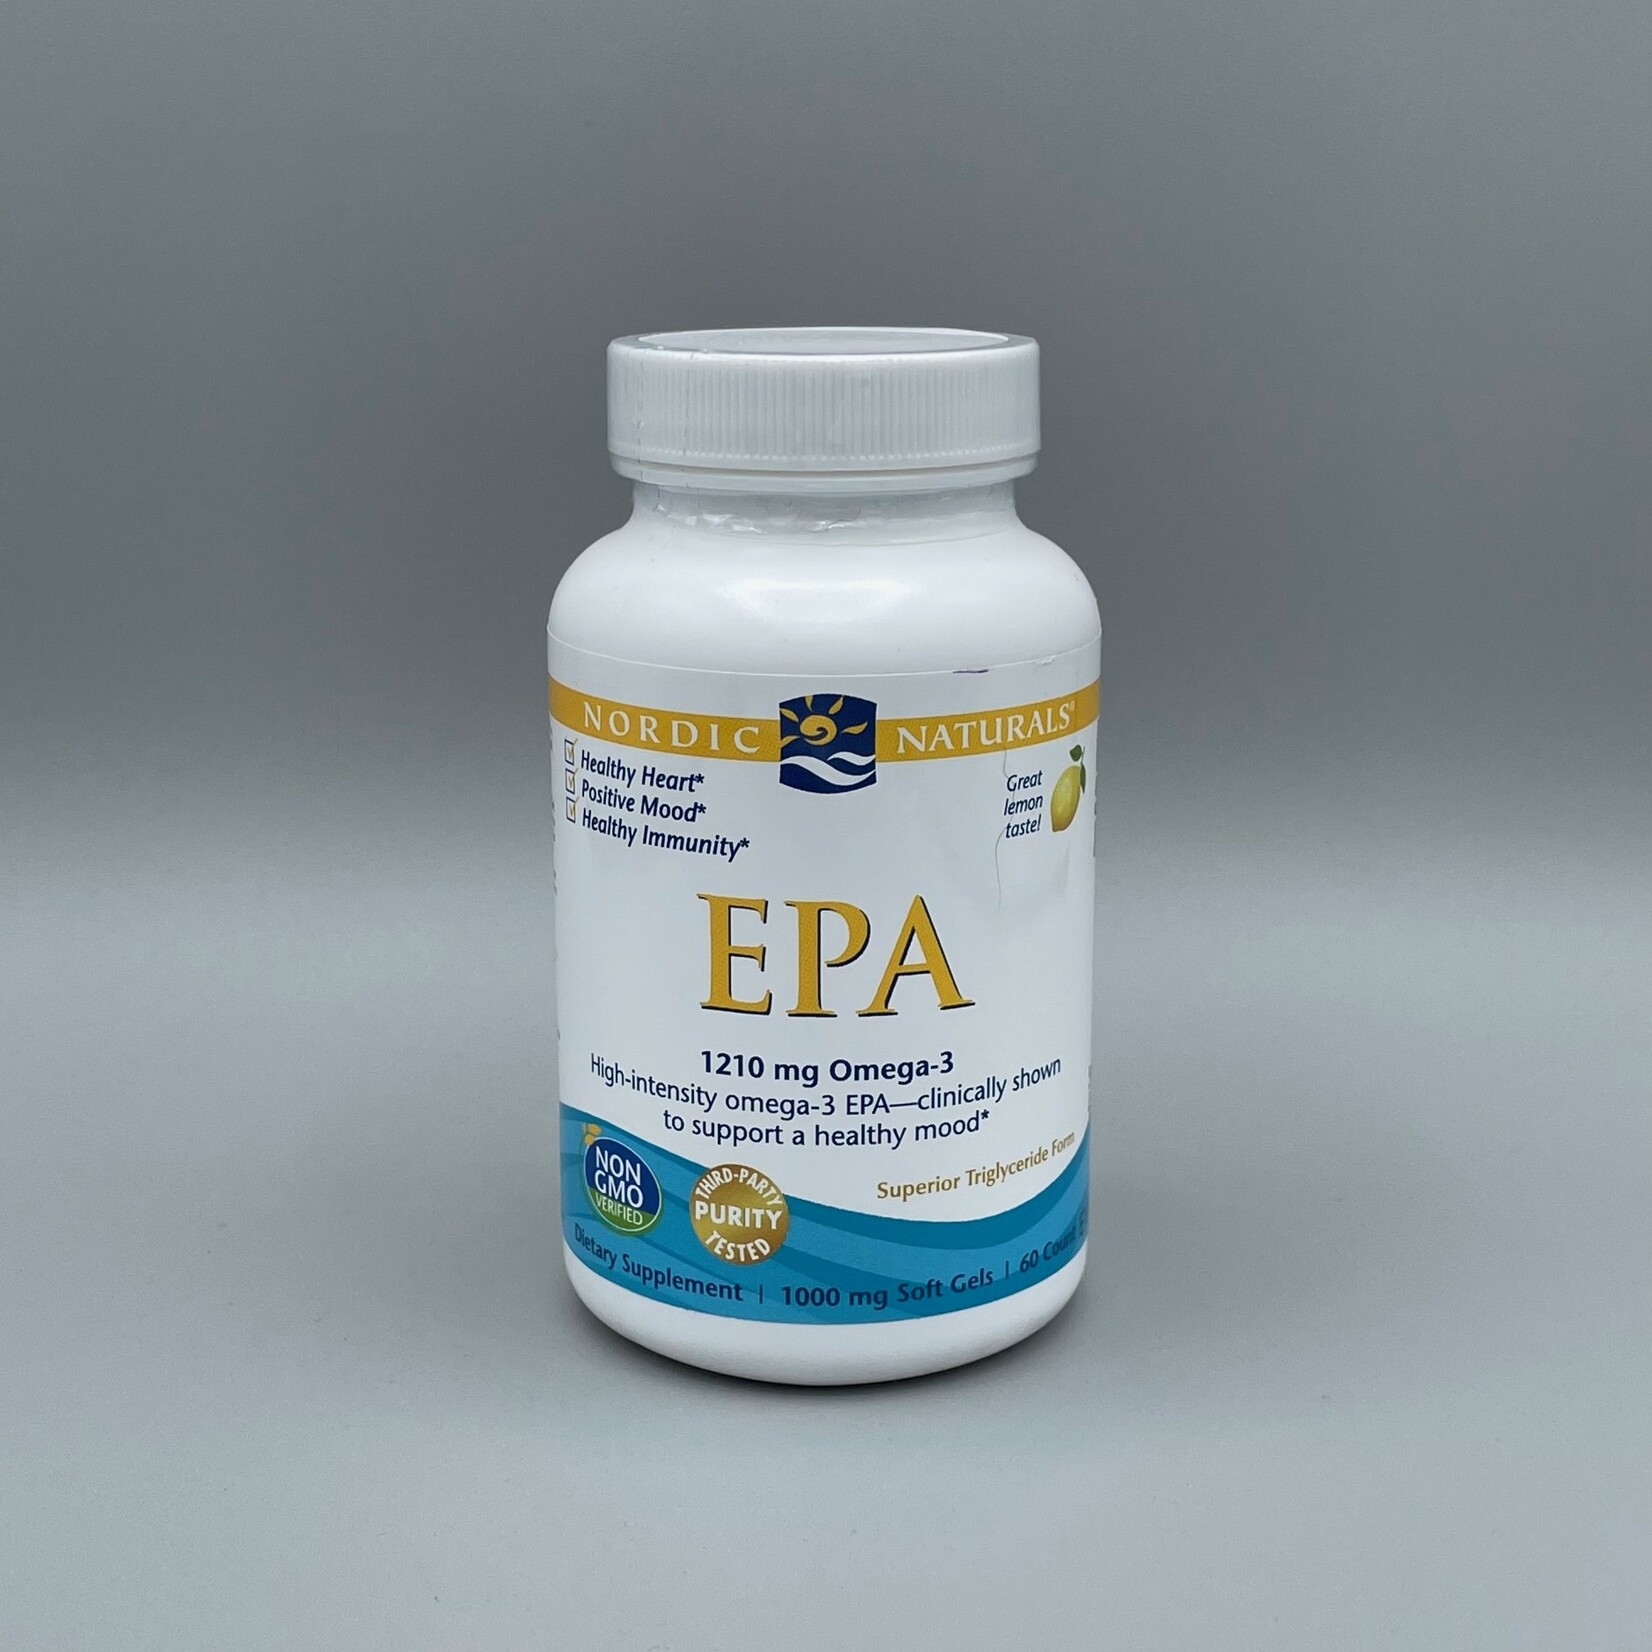 Nordic Naturals EPA (1,210 mg Omega-3, Lemon) - 1,000mg, 60 Softgels